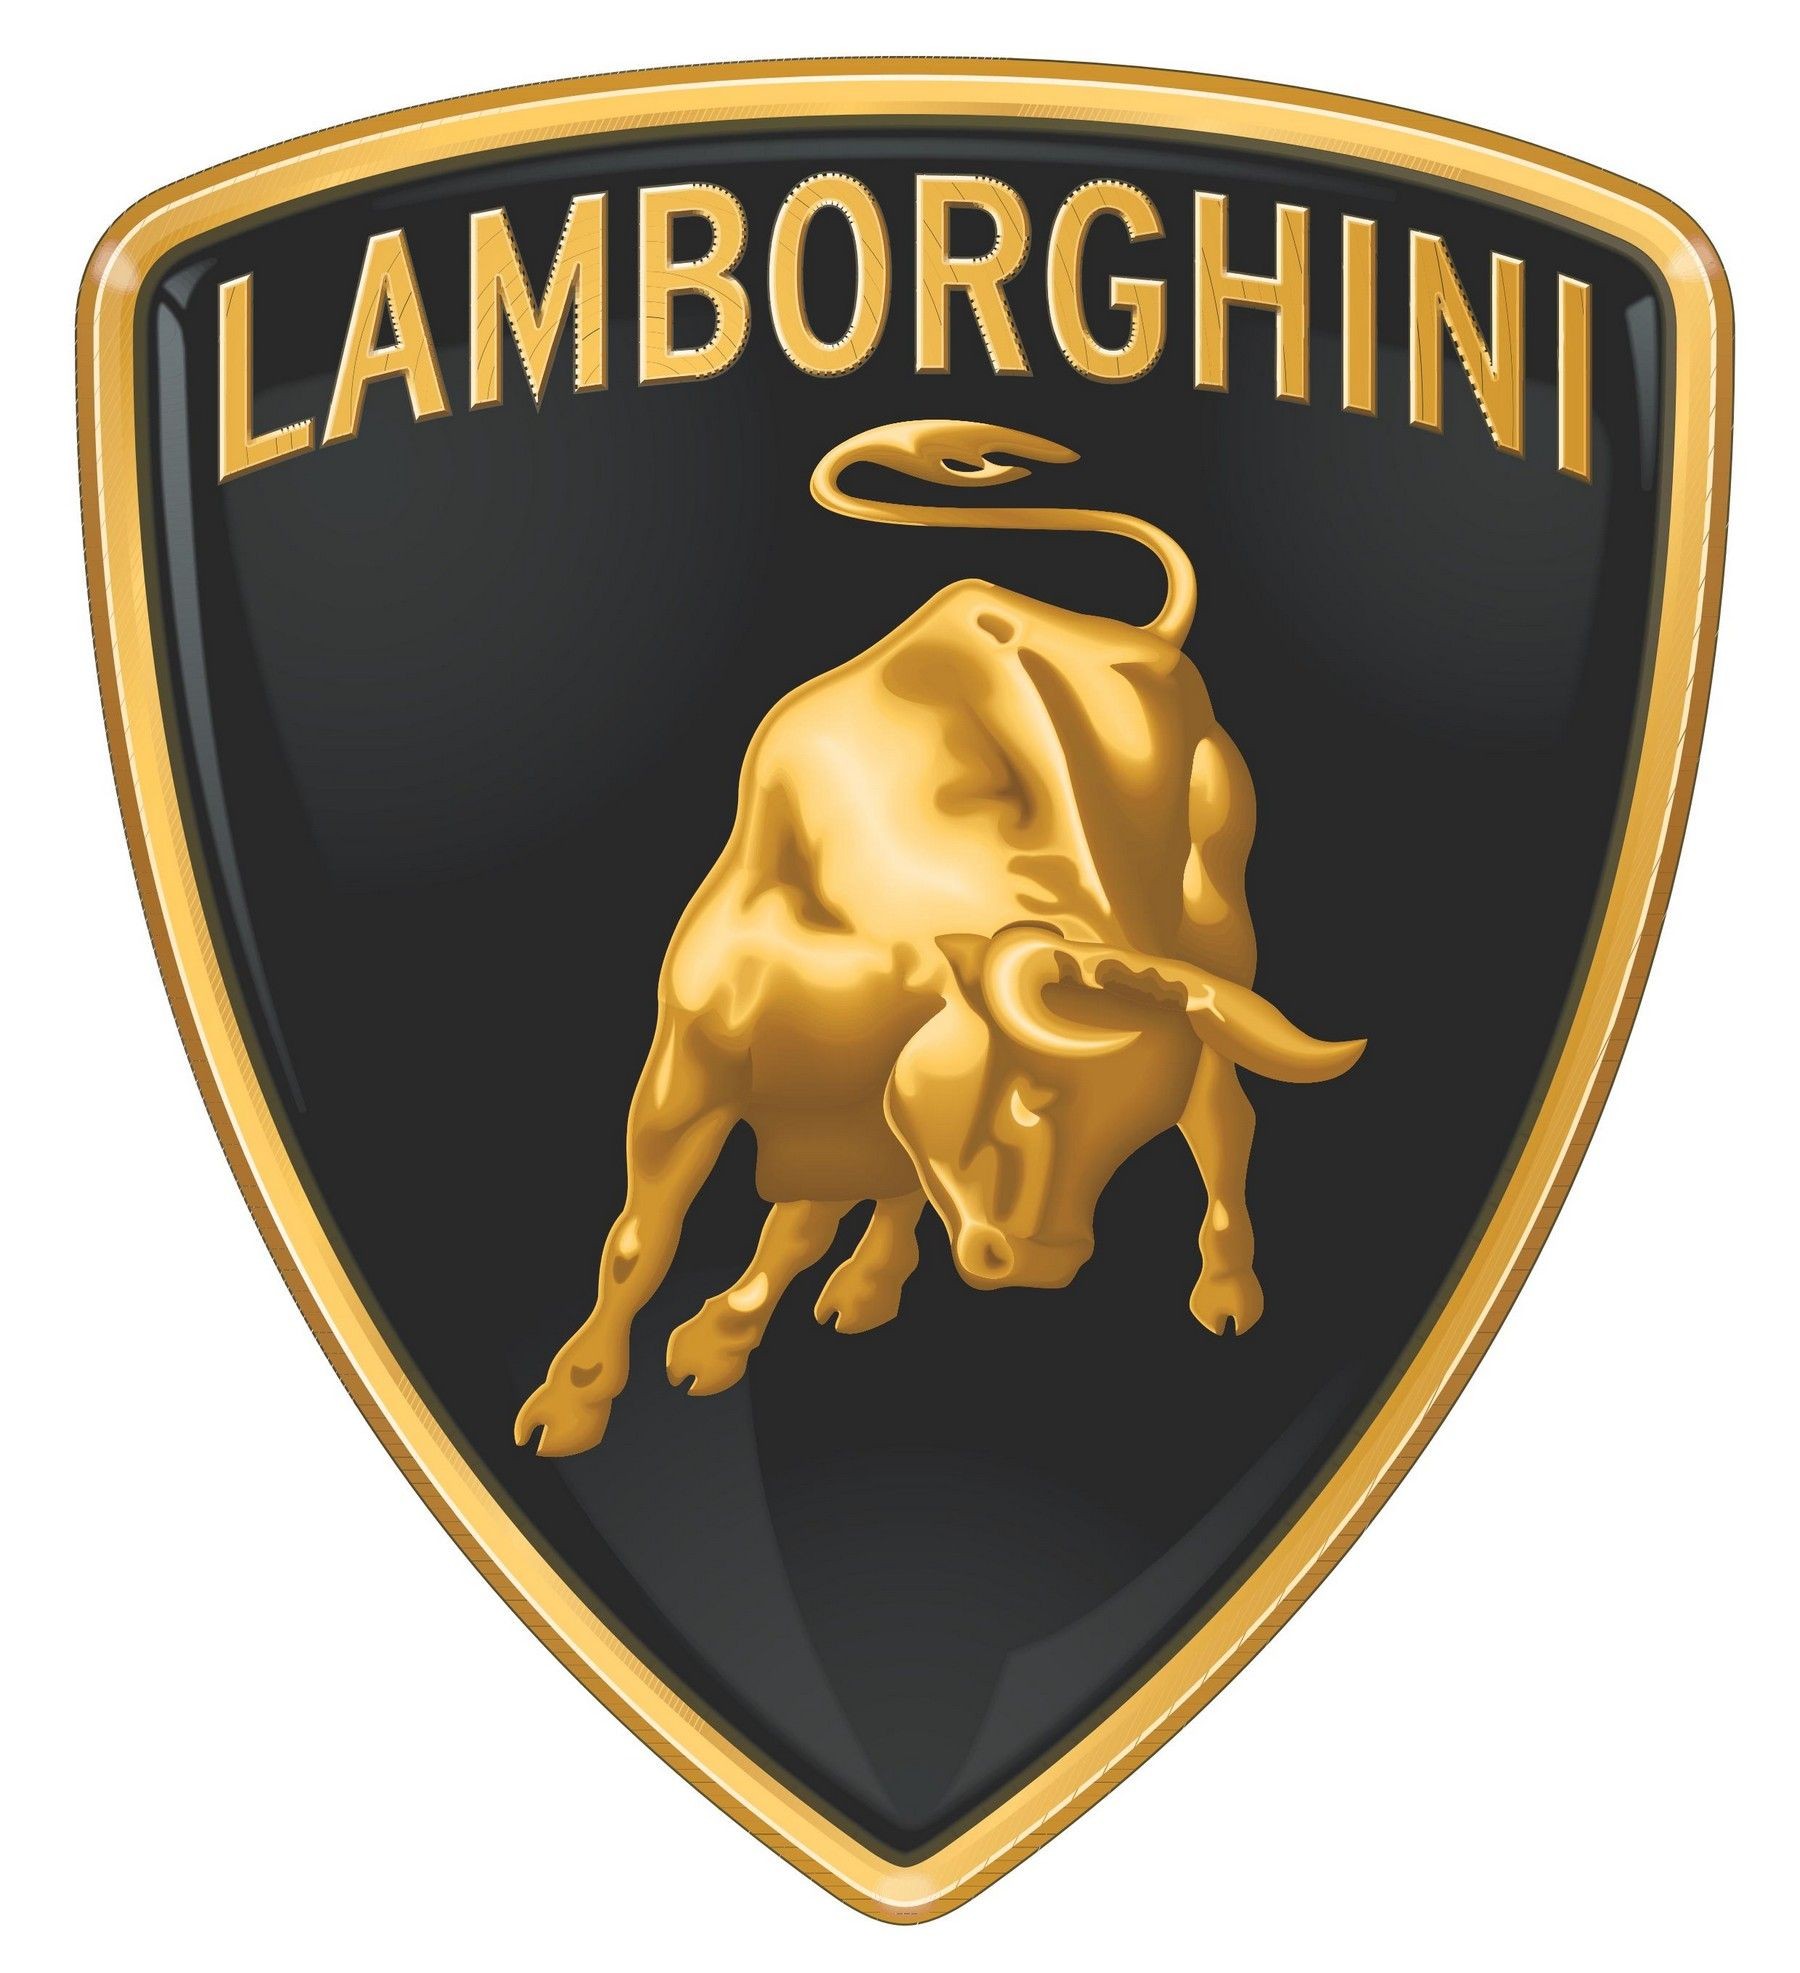 Black Lamborghini Soccer Ball Size 5